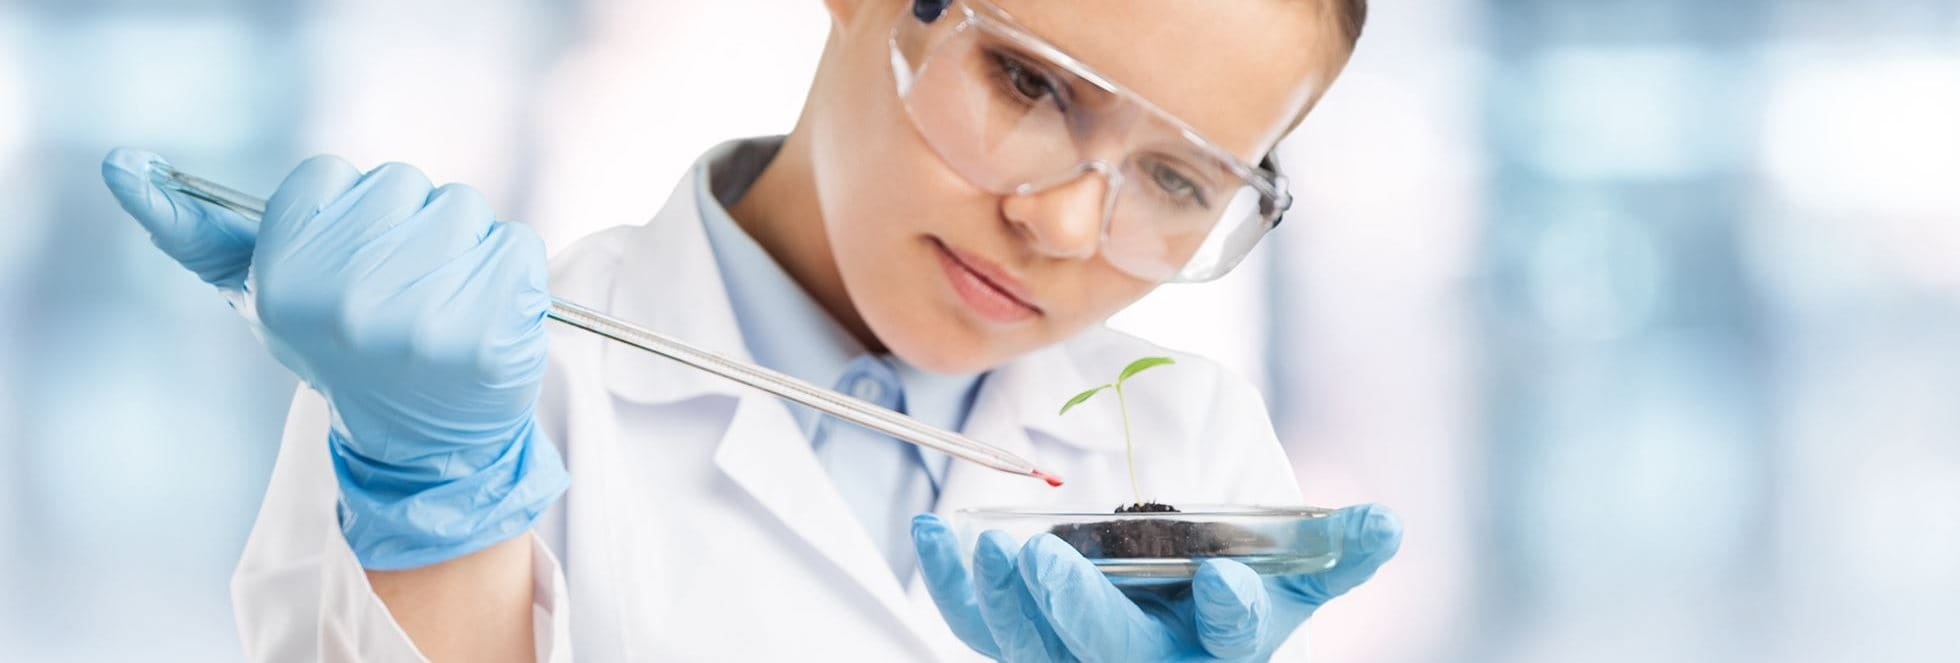 Een wetenschapper druppelt voorzichtig een chemisch monster op een plant.